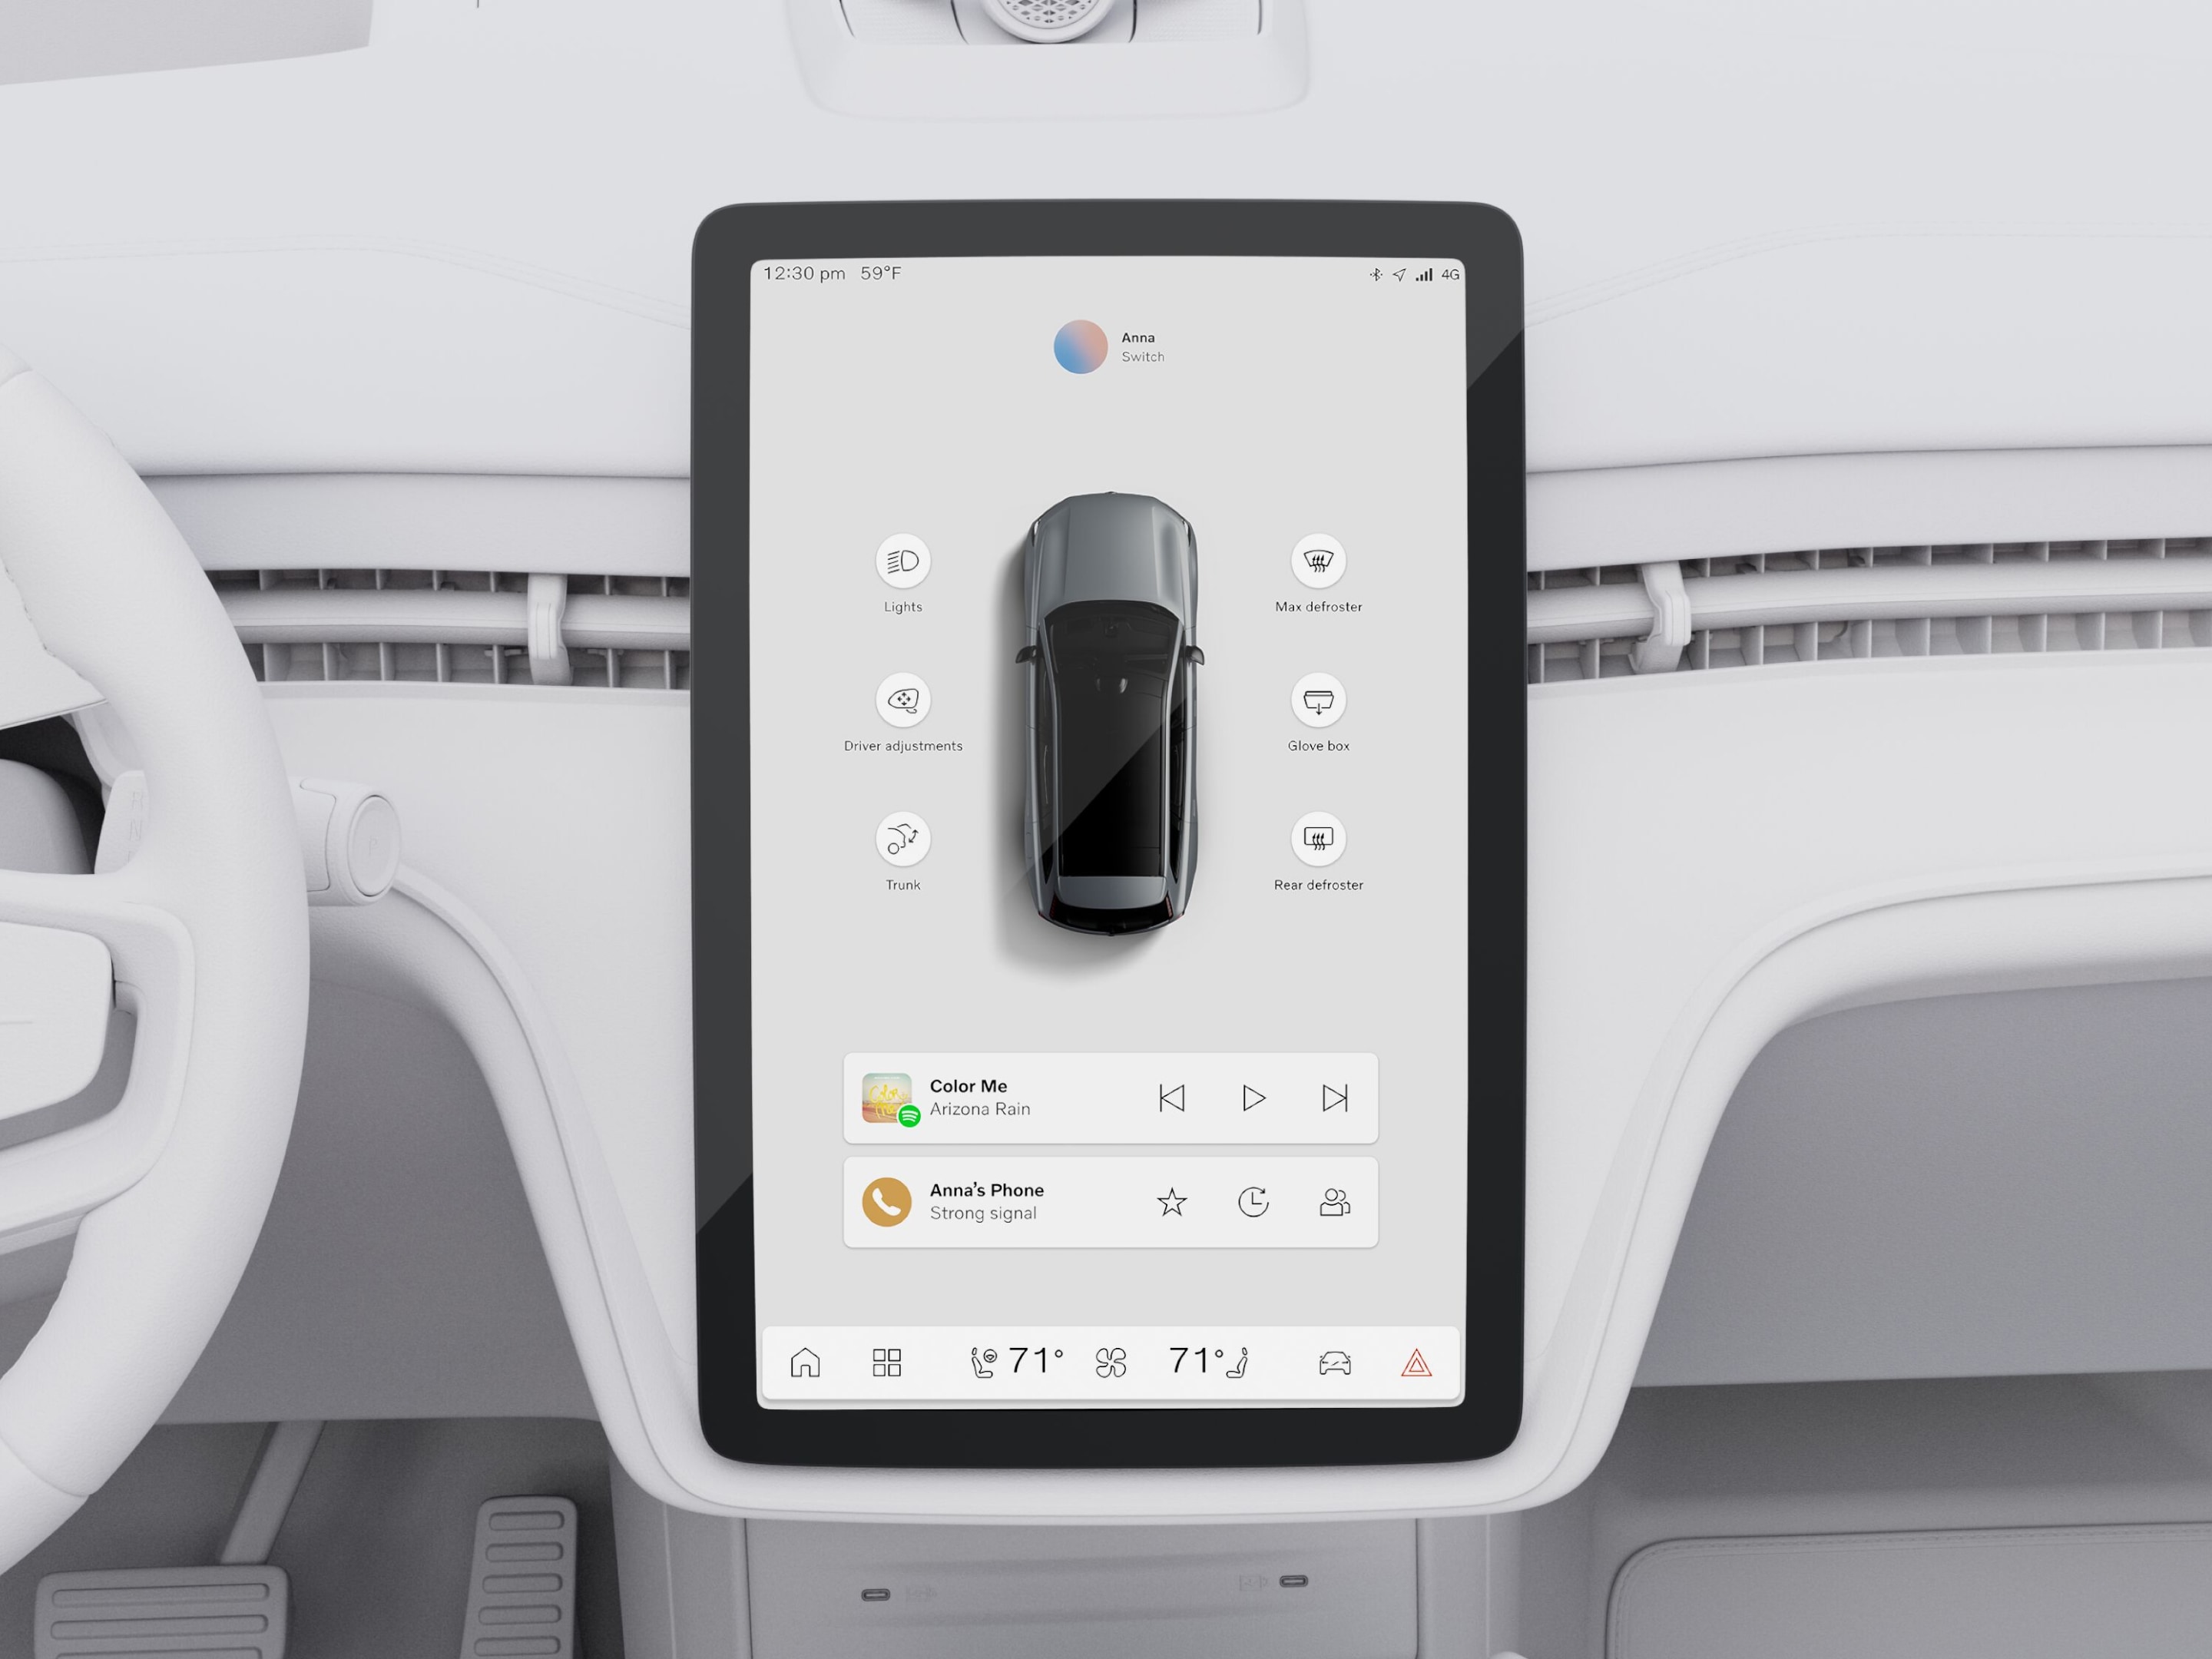 Εικόνα της κεντρικής οθόνης αφής από τα πίσω καθίσματα του αυτοκινήτου. Στην οθόνη προβάλλεται μια πανοραμική εικόνα του EX90 που περιβάλλεται από widget.